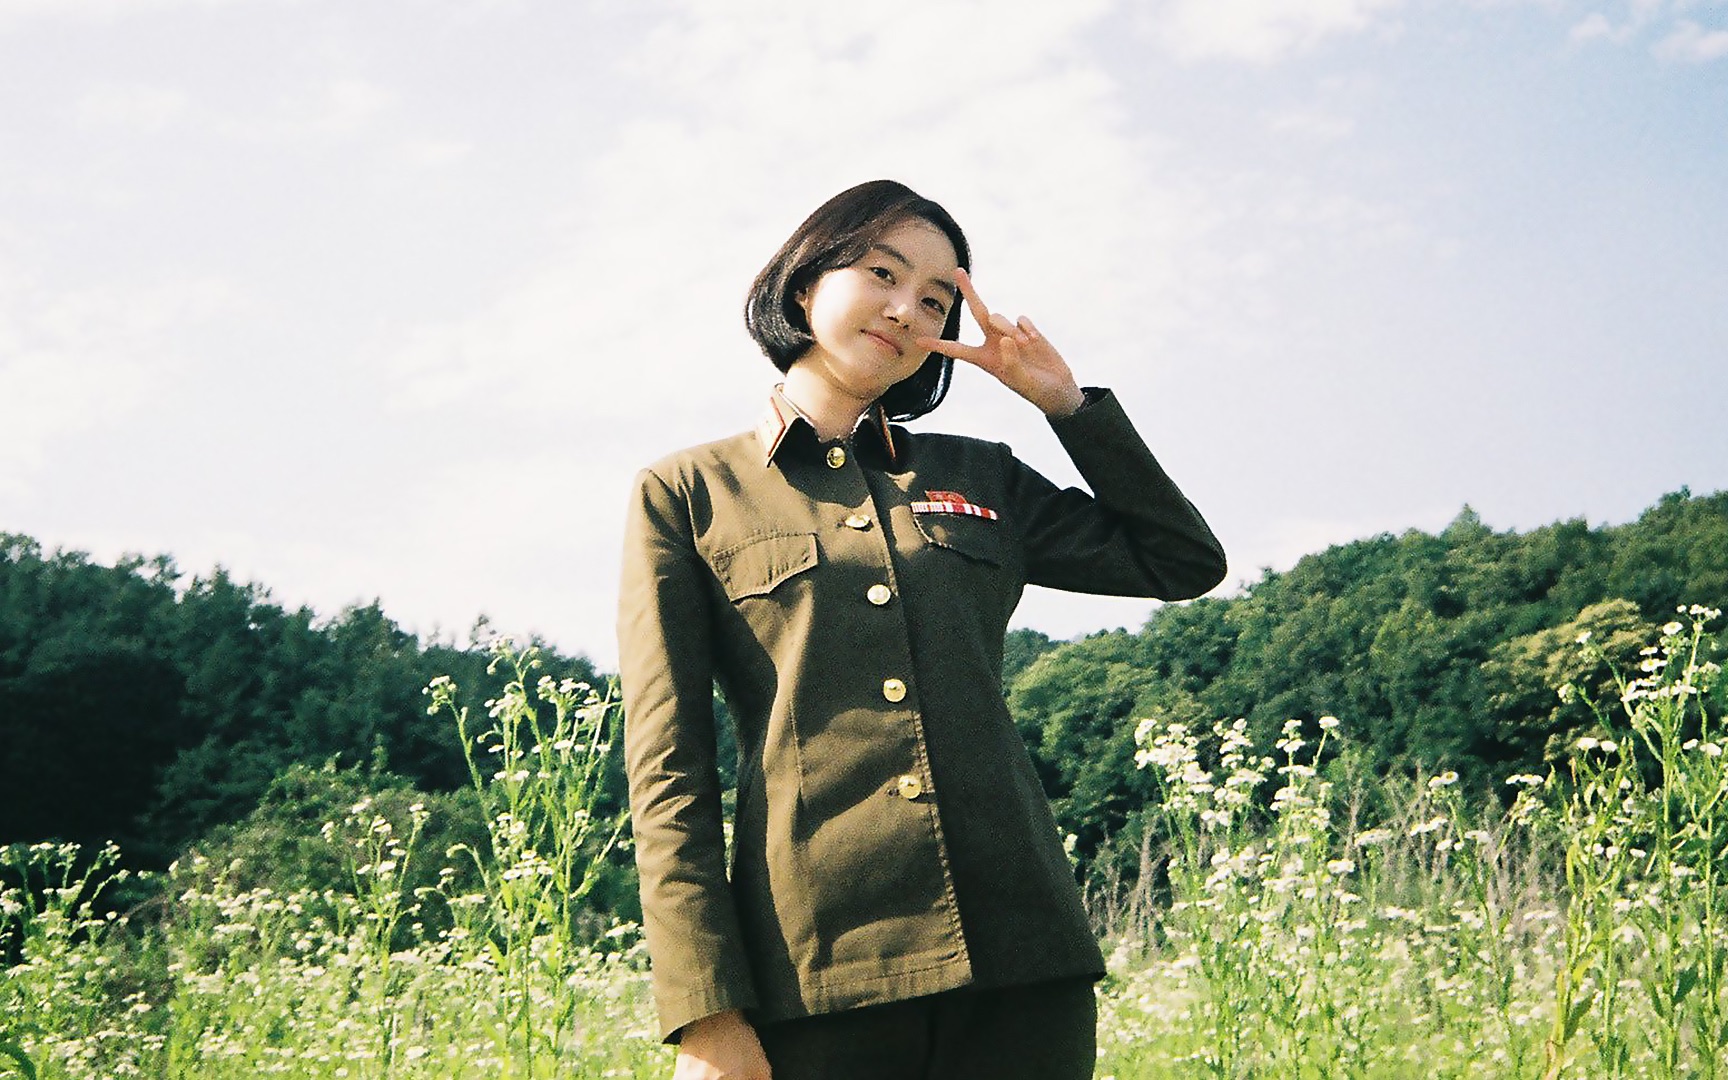 可爱自恋的朝鲜女兵朴世婉,看着温柔可爱发飙起来却是相当疯狂